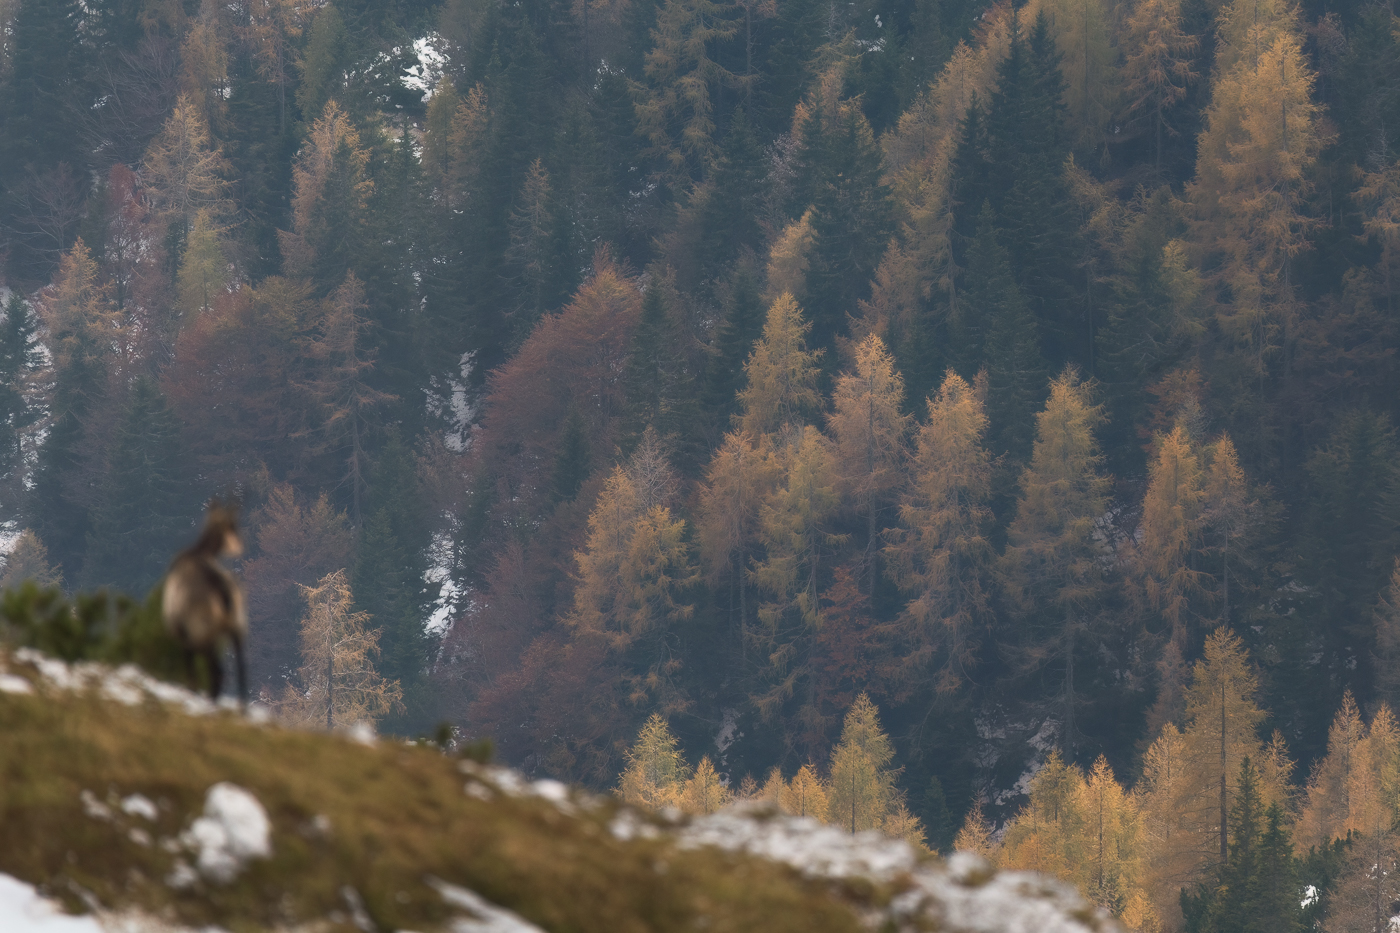 Le foreste alpine, in autunno, sono uno spettacolo per chiunque. Camoscio alpino (Rupicapra rupicapra). Alpi Giulie, Italia.